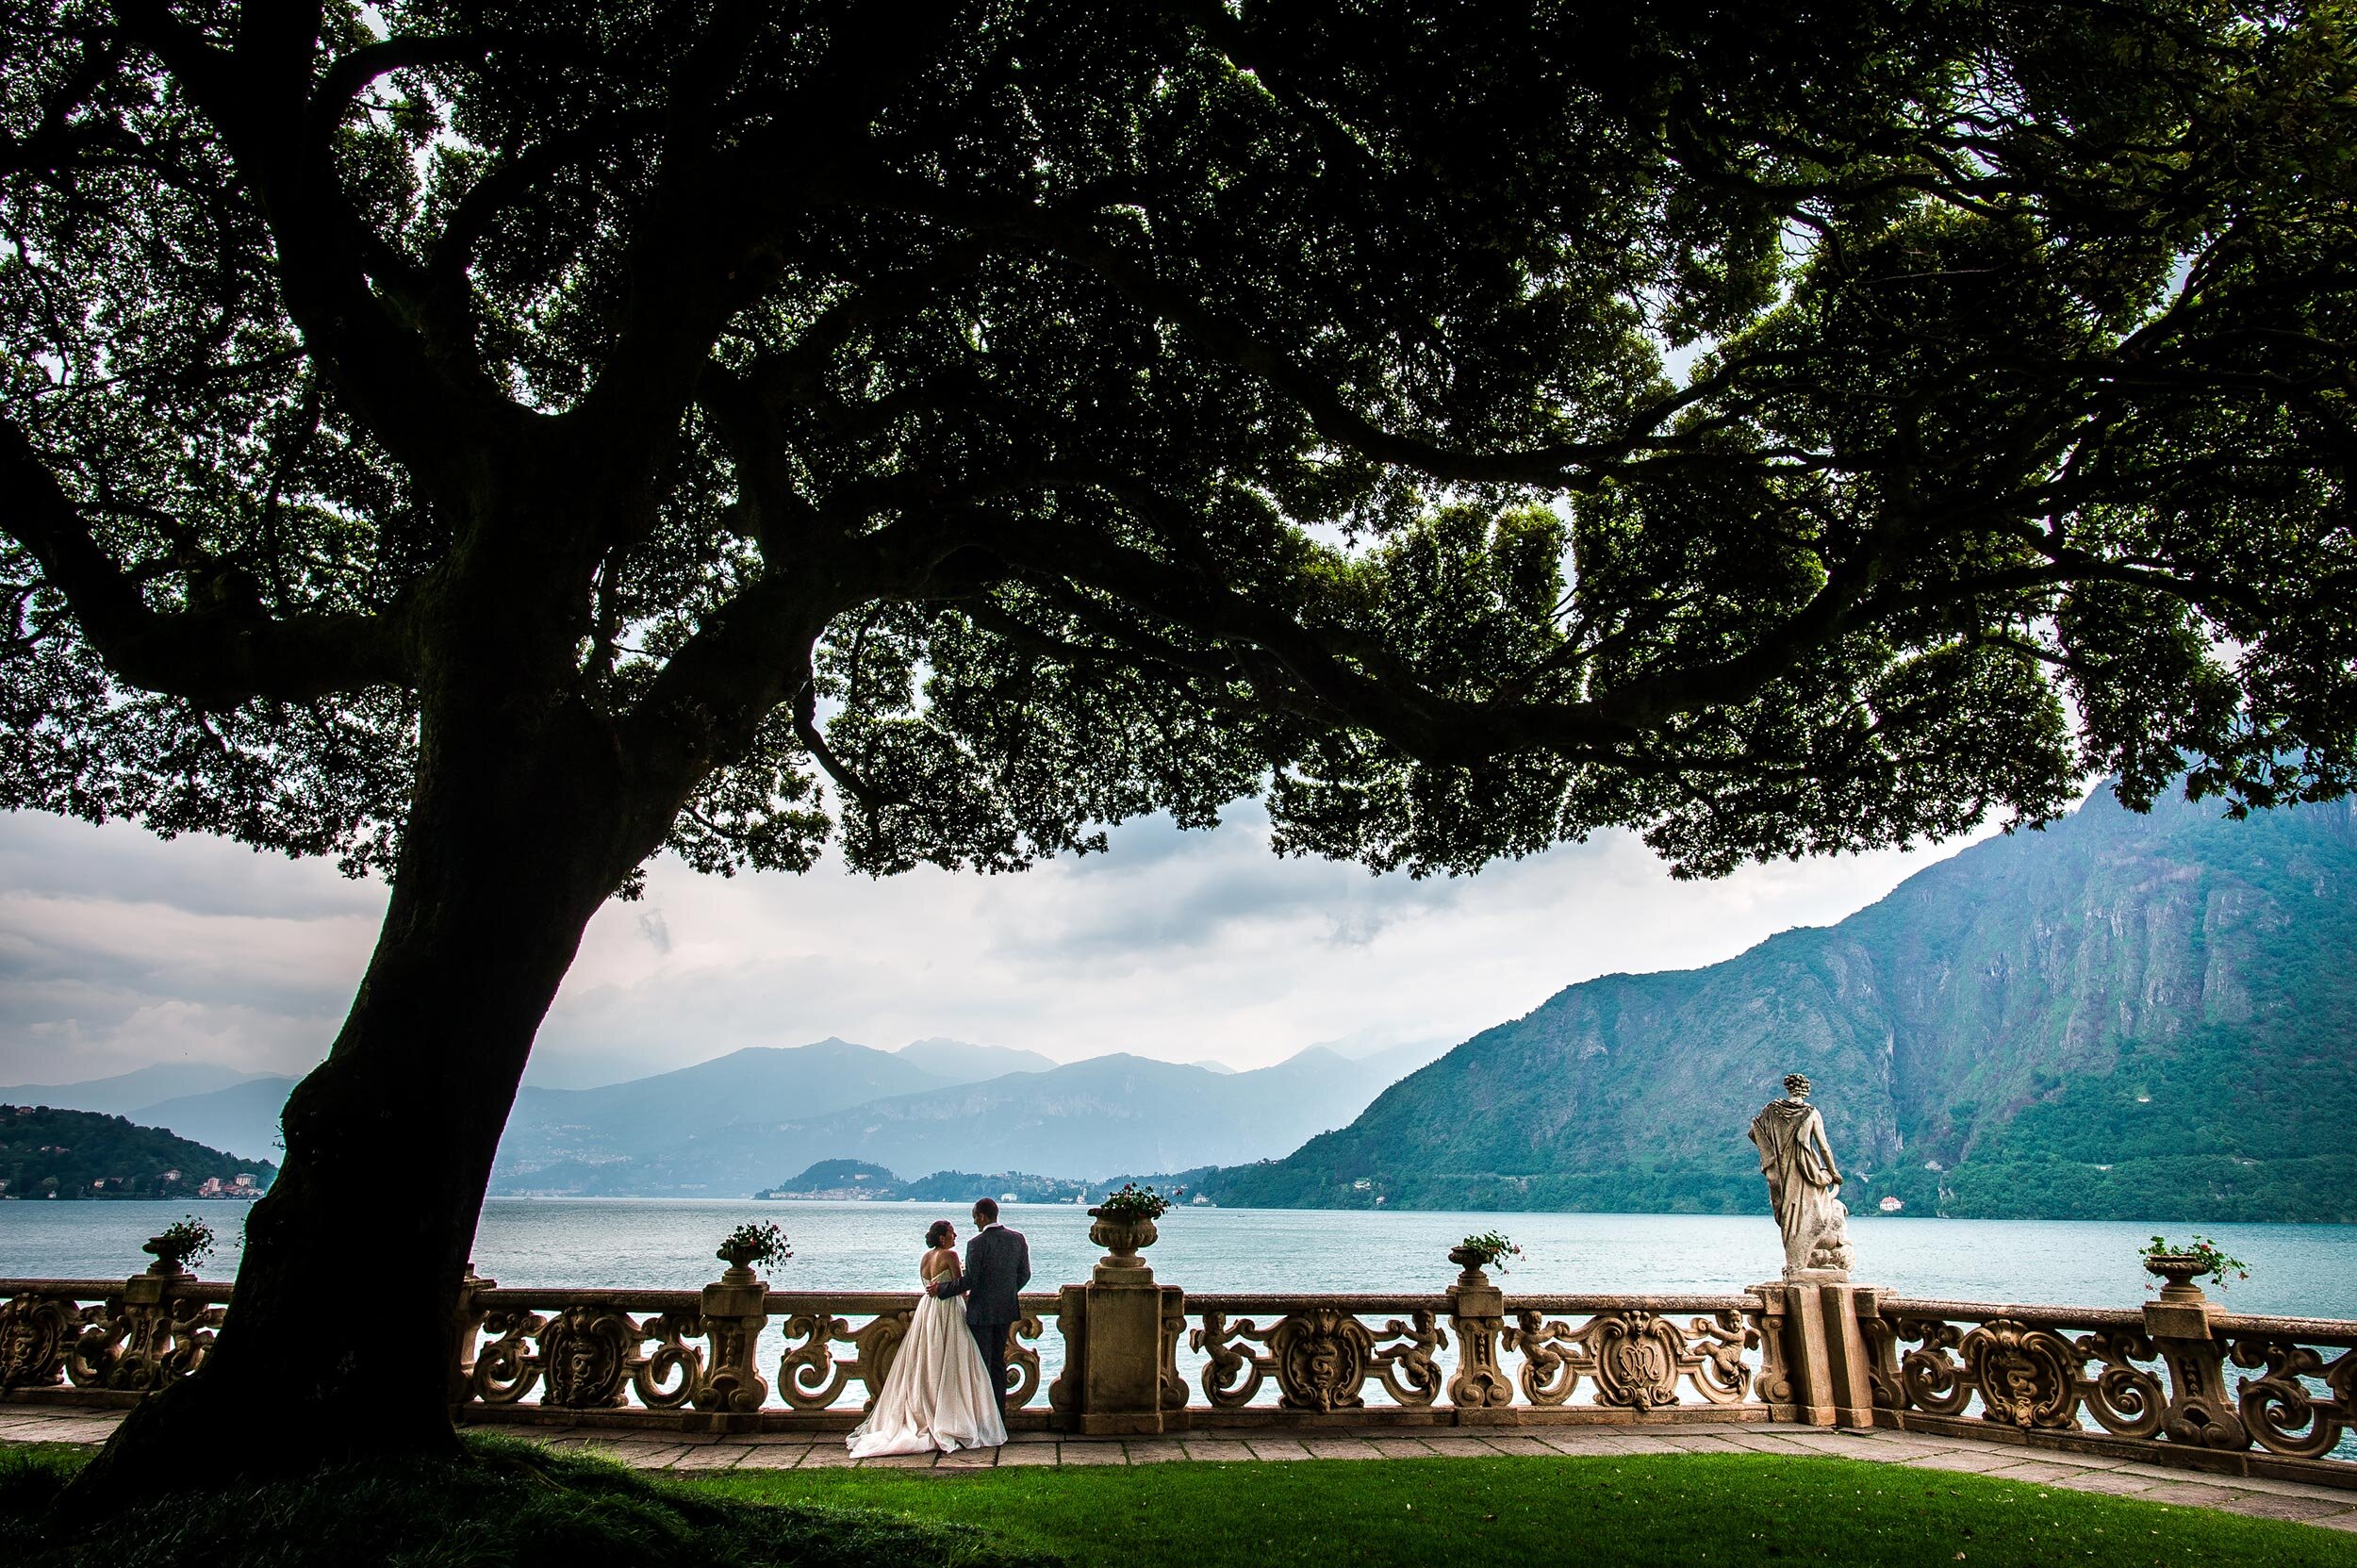 Villa-Del-Balbianello-Majestic-Tree-Bellagio-Lake-Como-Wedding-Photographer-Italy-Alessandro-Avenali.jpg